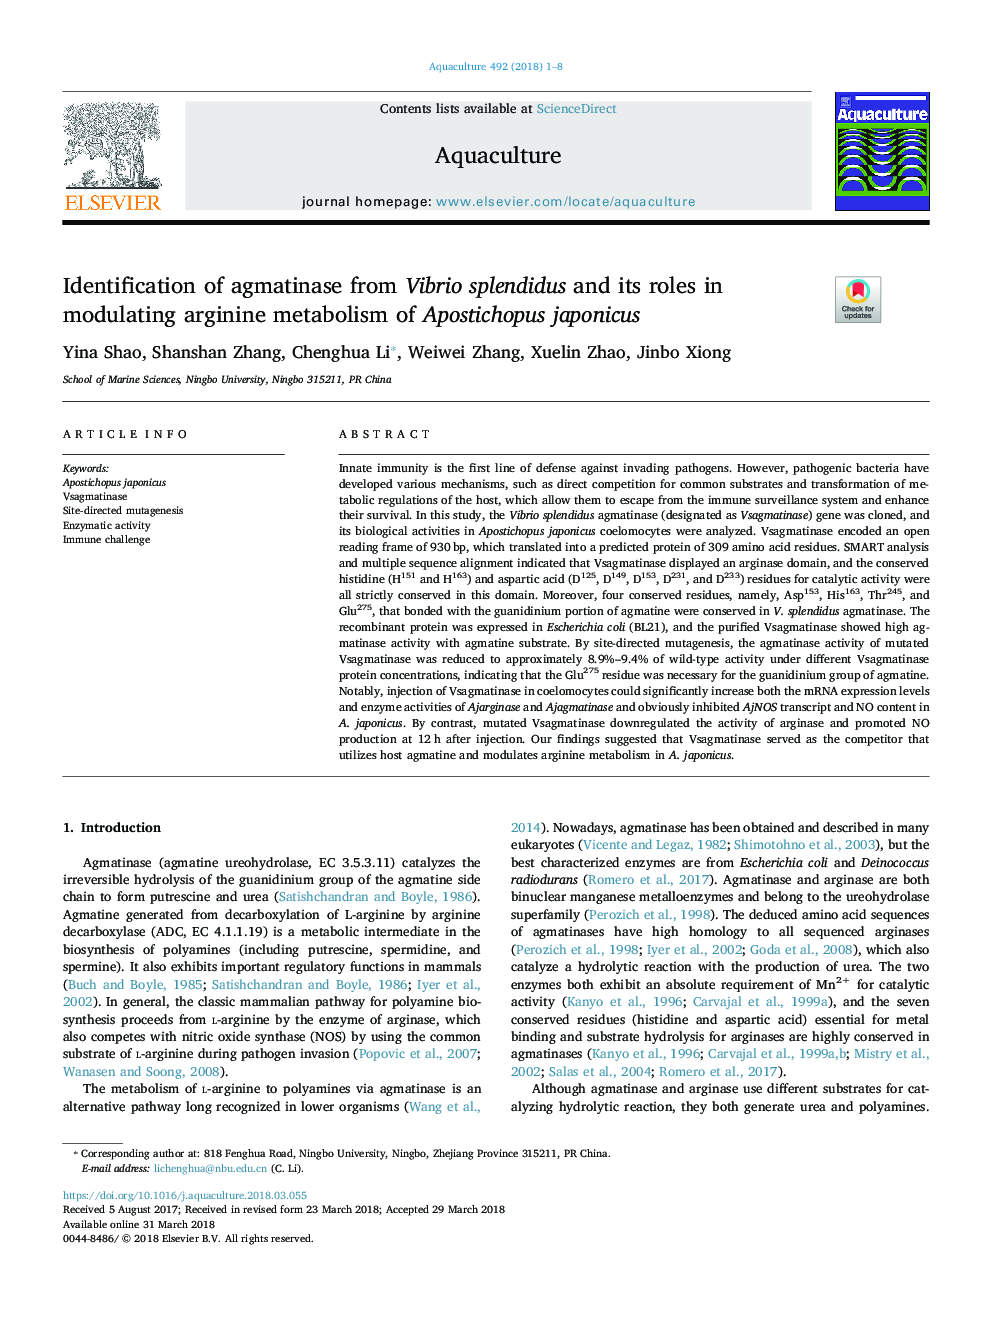 Identification of agmatinase from Vibrio splendidus and its roles in modulating arginine metabolism of Apostichopus japonicus